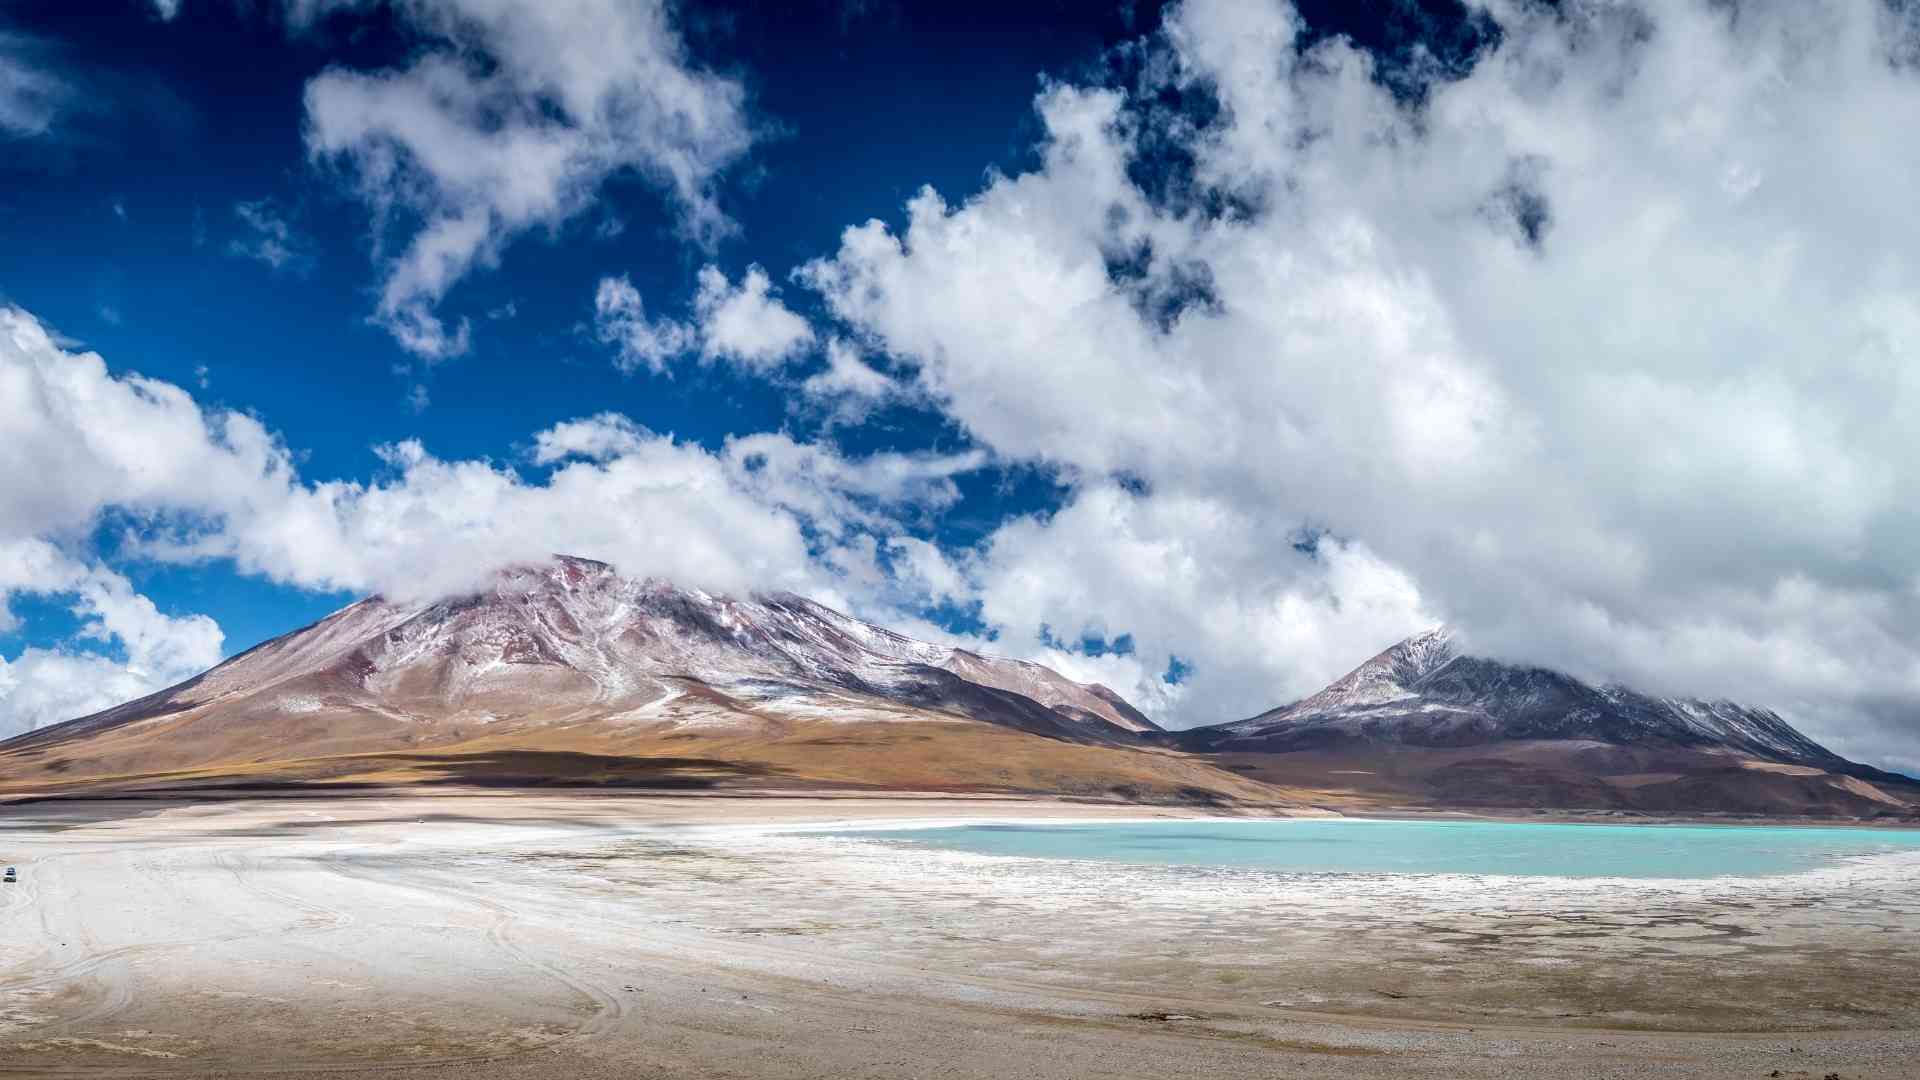 Laguna verde - Bolivia